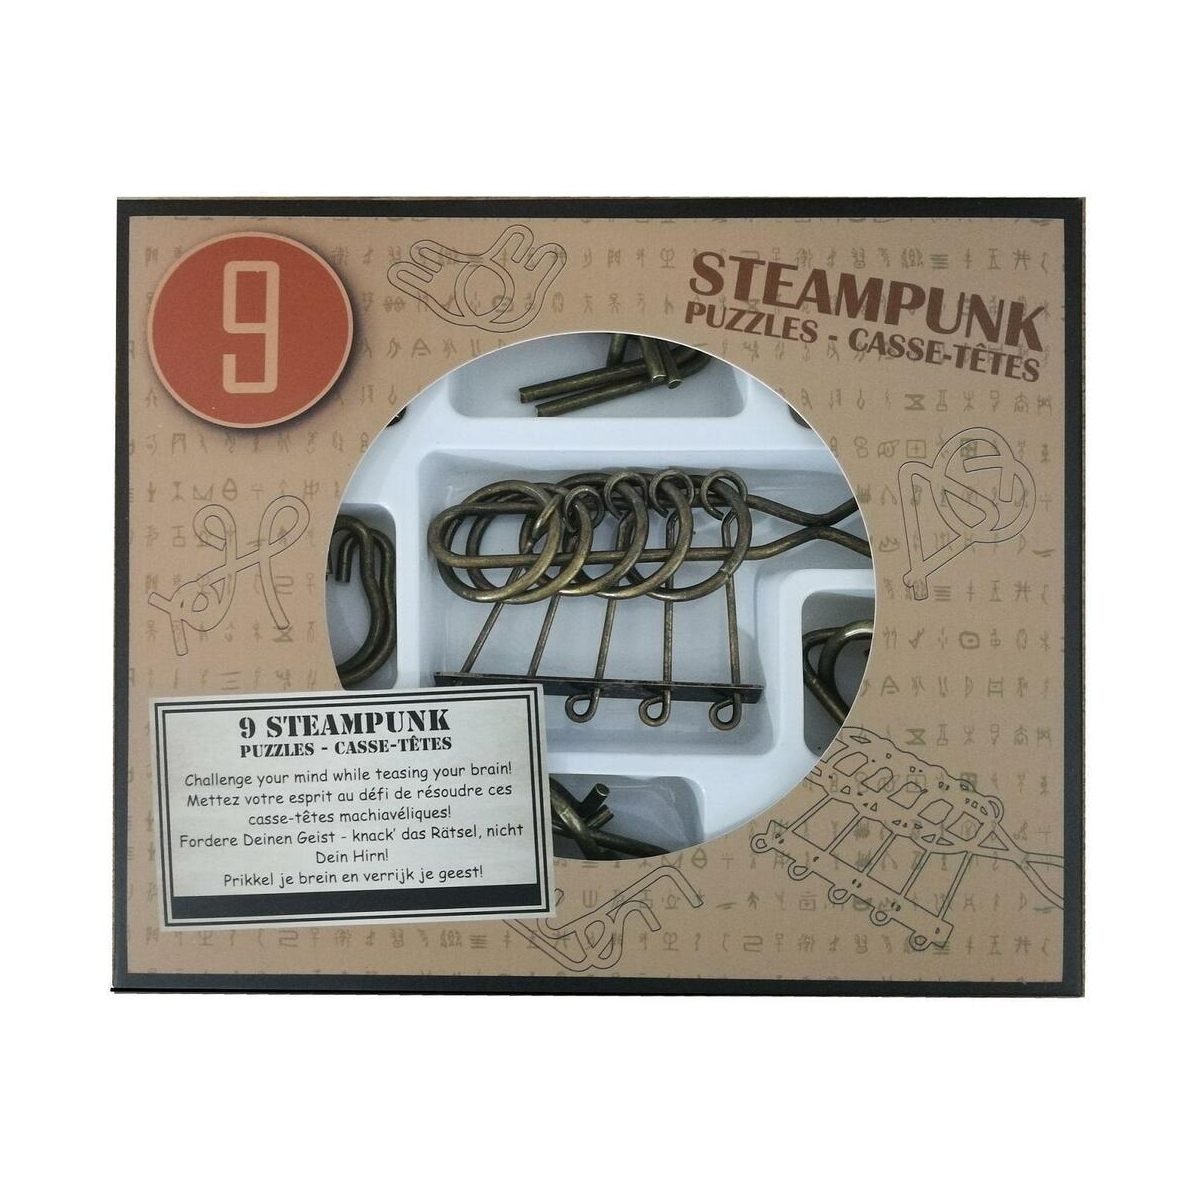 EUREKA Steampunk Puzzles - im Display Box brauner in 52473200 *-**** Puzzle 9 erhältlich) Puzzles (nur